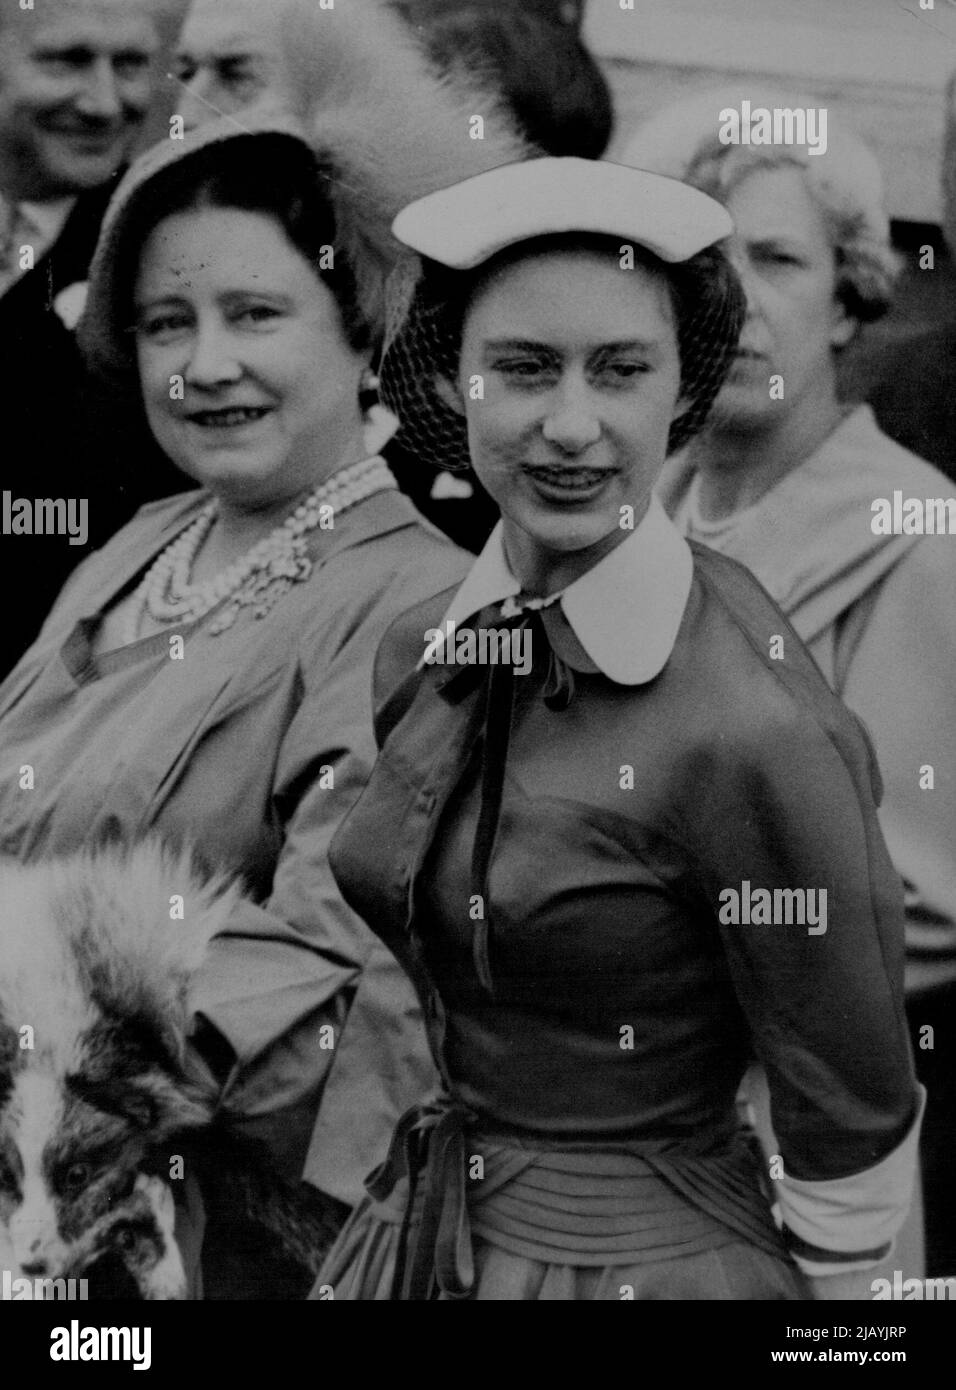 Princesse Margaret à Ascot -- la princesse Margaret est vue avec la reine Elizabeth la reine mère à Ascot cet après-midi, 17 juin. 17 juin 1953. (Photo par photo de presse associée). Banque D'Images